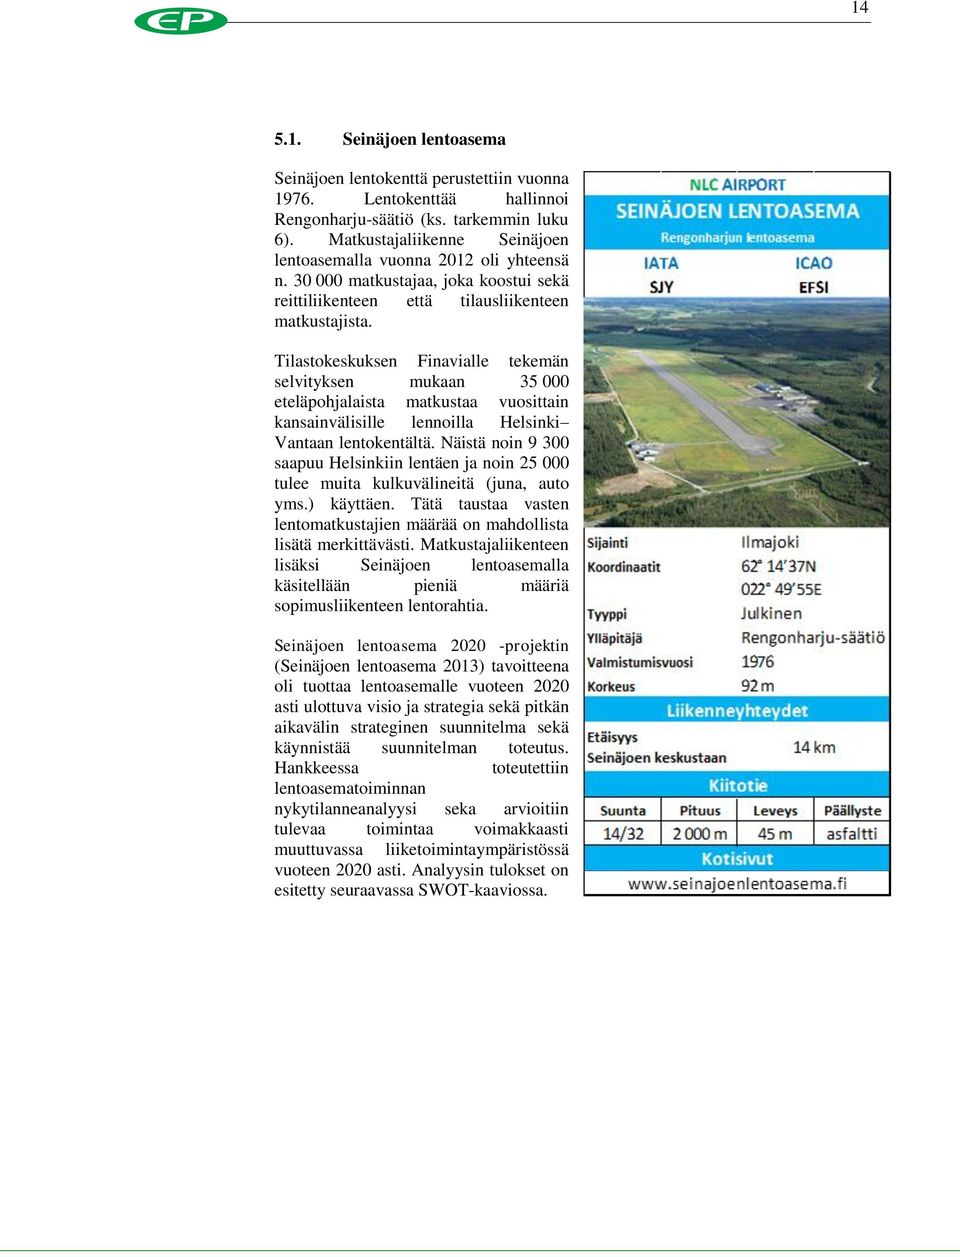 Tilastokeskuksen Finavialle tekemän selvityksen mukaan 35 000 eteläpohjalaista matkustaa vuosittain kansainvälisille lennoilla Helsinki Vantaan lentokentältä.